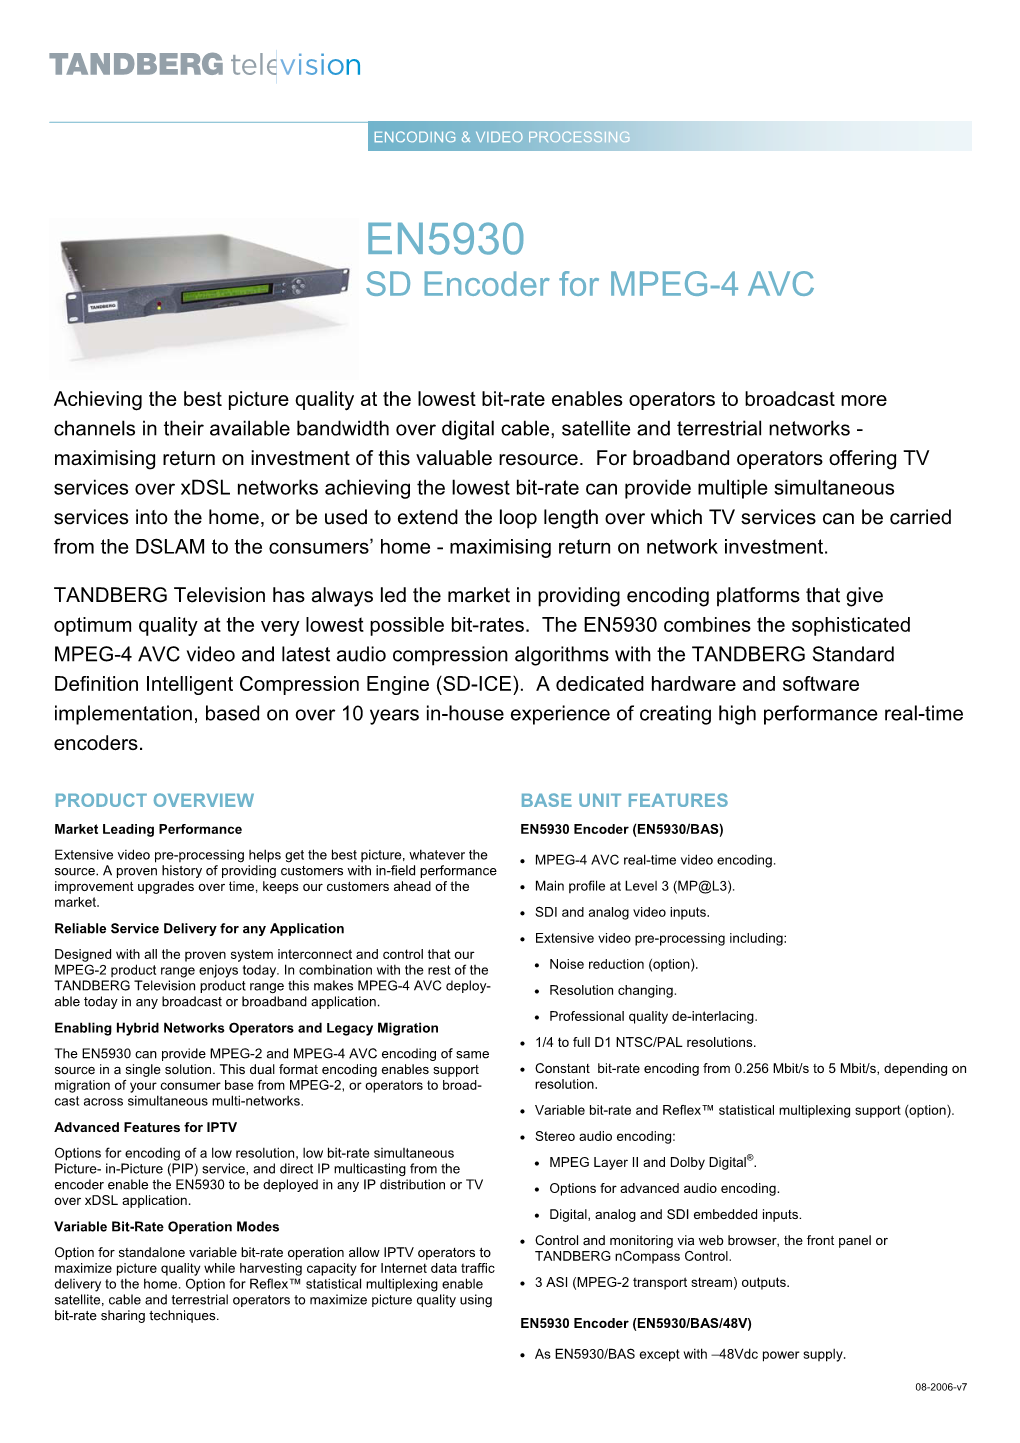 EN5930 SD Encoder for MPEG-4 AVC